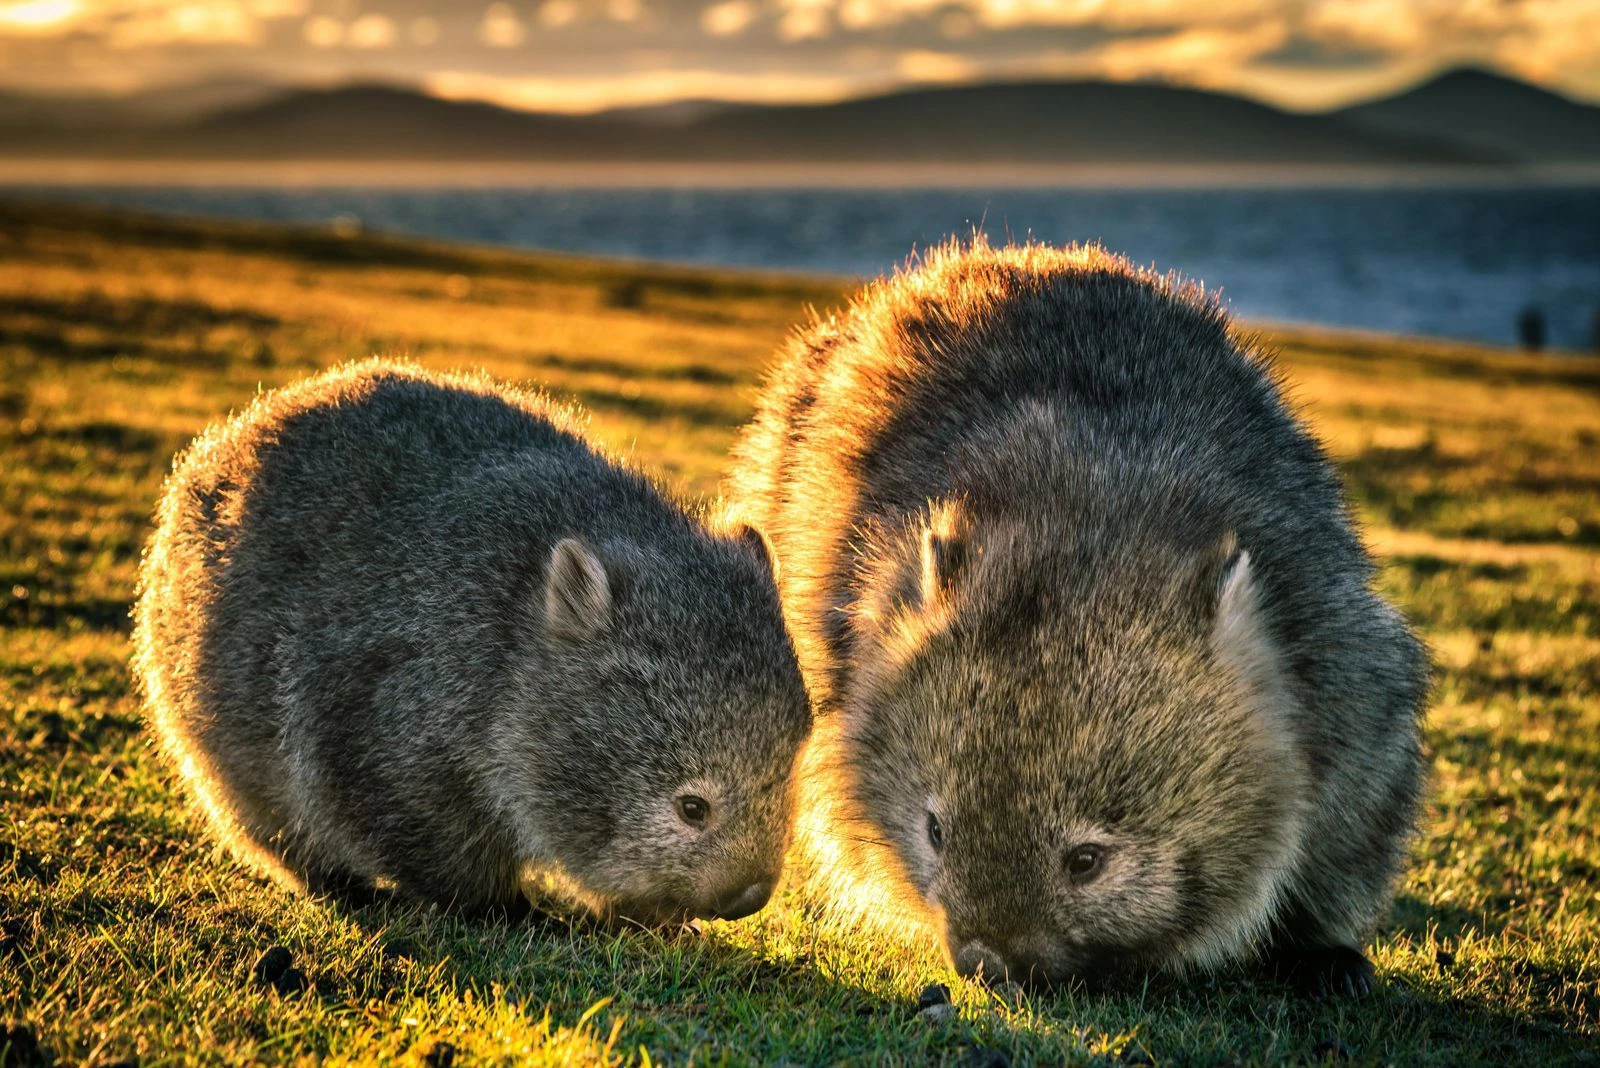 Trong khi đó, vào năm 2018, các nhà nghiên cứu Australia đã nghiên cứu mô học cũng như chụp CT một con wombat còn sống. Họ kết luận những thay đổi về độ dày của cơ, cùng với sự khô đi của phân ở đại tràng, đã khiến phân wombat có hình dạng đặc biệt. Ảnh: Smithsonian.